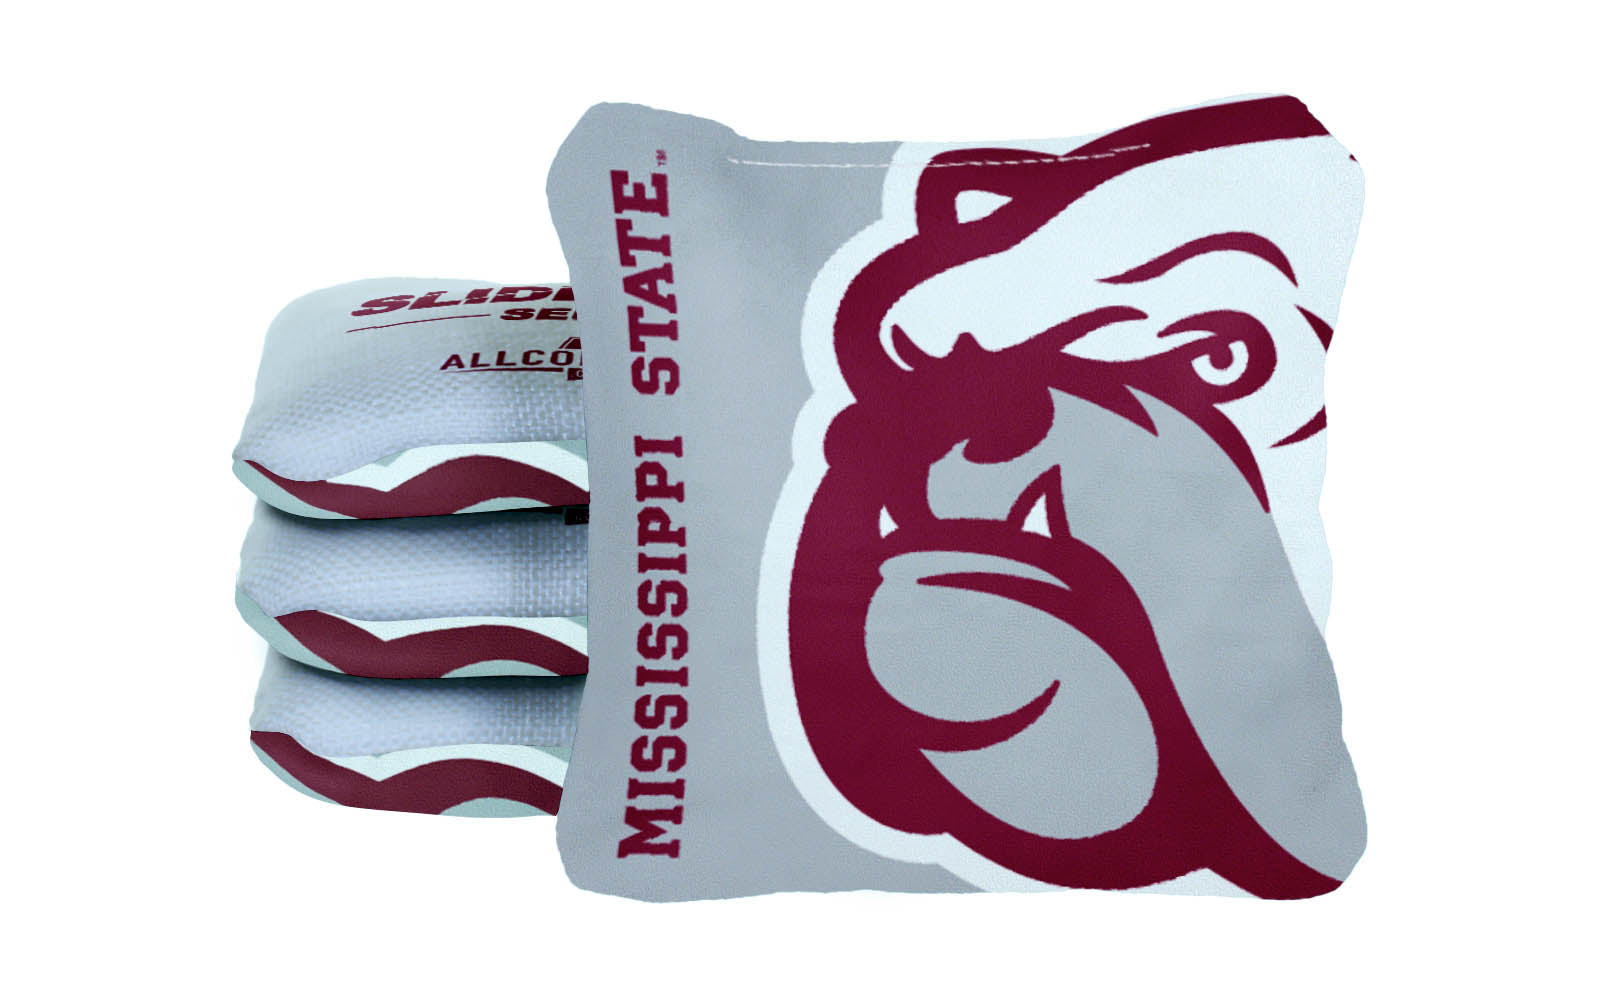 Officially Licensed Collegiate Cornhole Bags - AllCornhole Slide Rite - Set of 4 - Mississippi State University